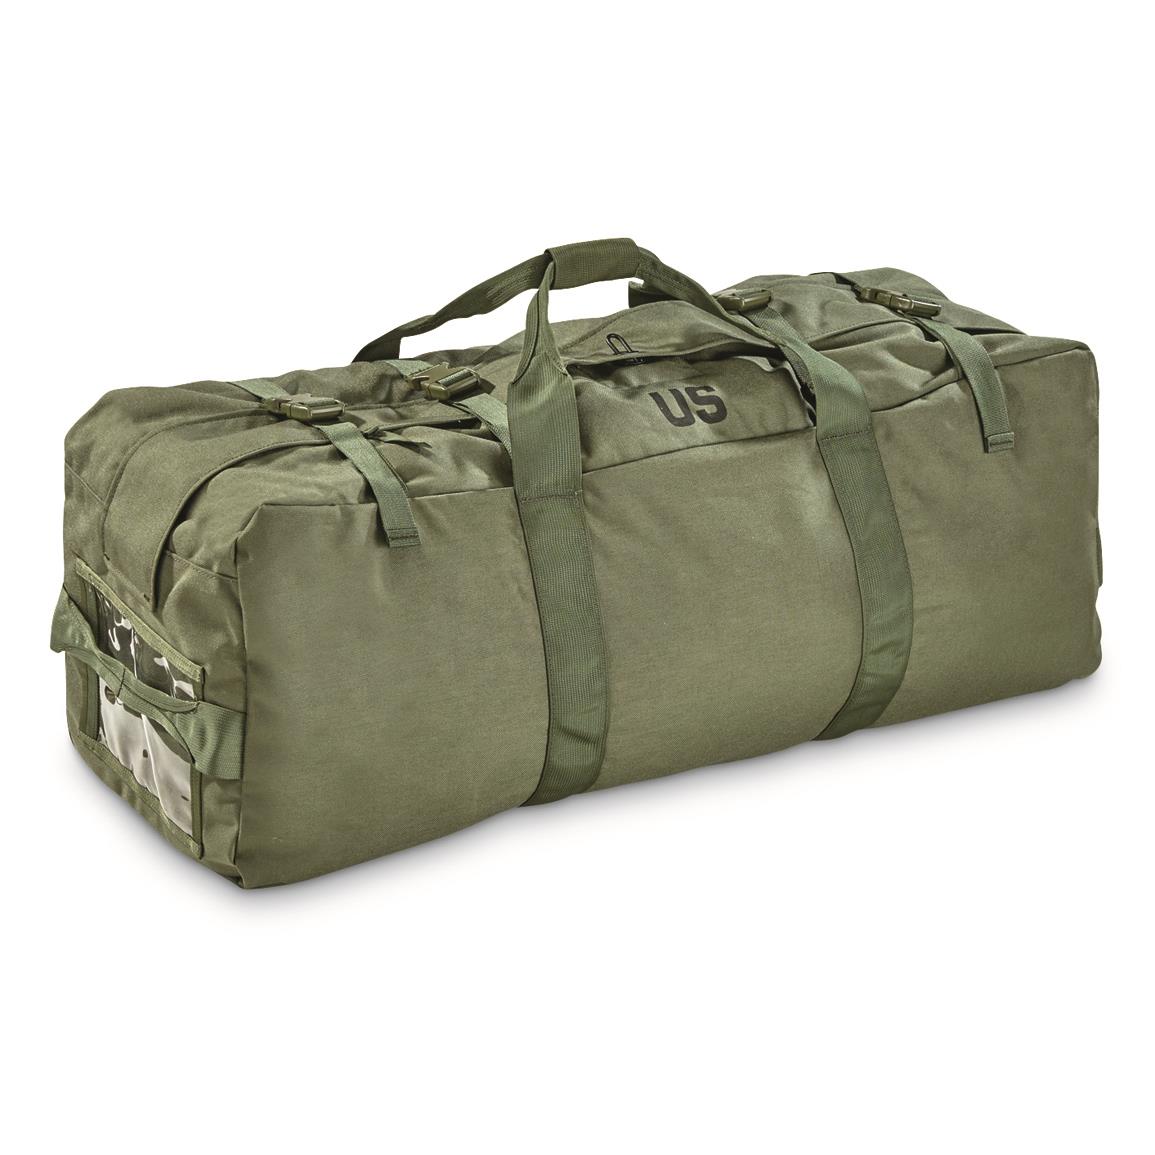 Allen Company Sportsman Camouflage Duffel Bag 14002 